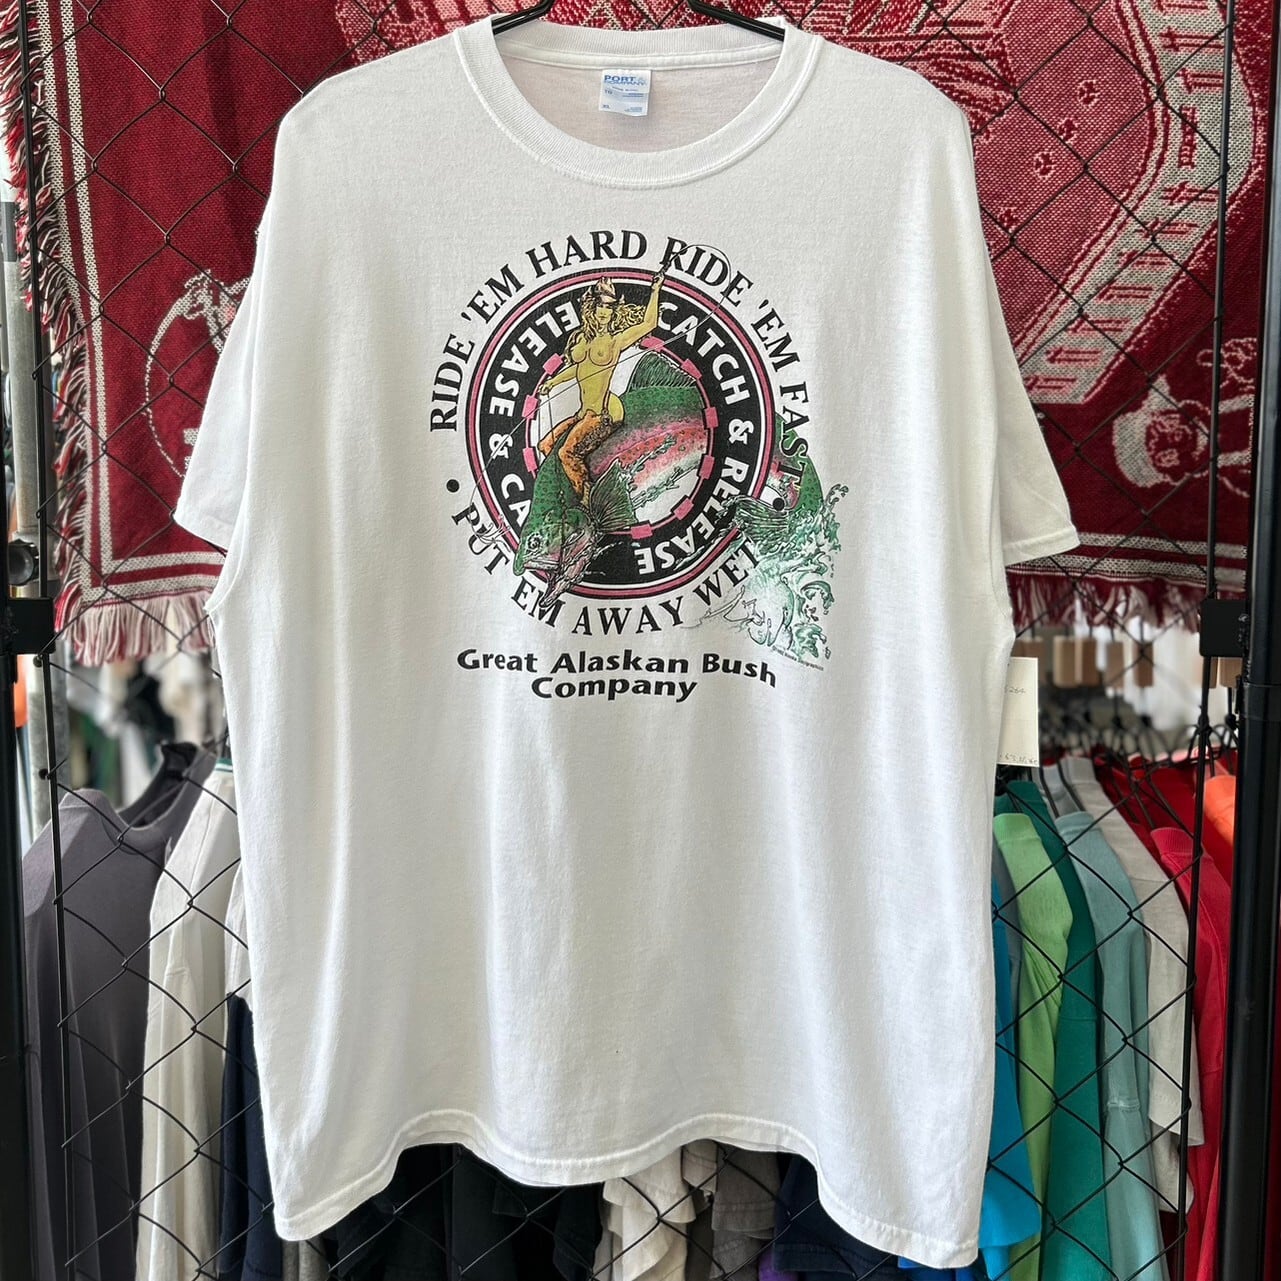 90s USA製 グレイトアラスカンブッシュカンパニー 企業系 半袖Tシャツ デザインプリント XL 古着 古着屋 埼玉 ストリート オンライン 通販  アメカジ ビンテージ